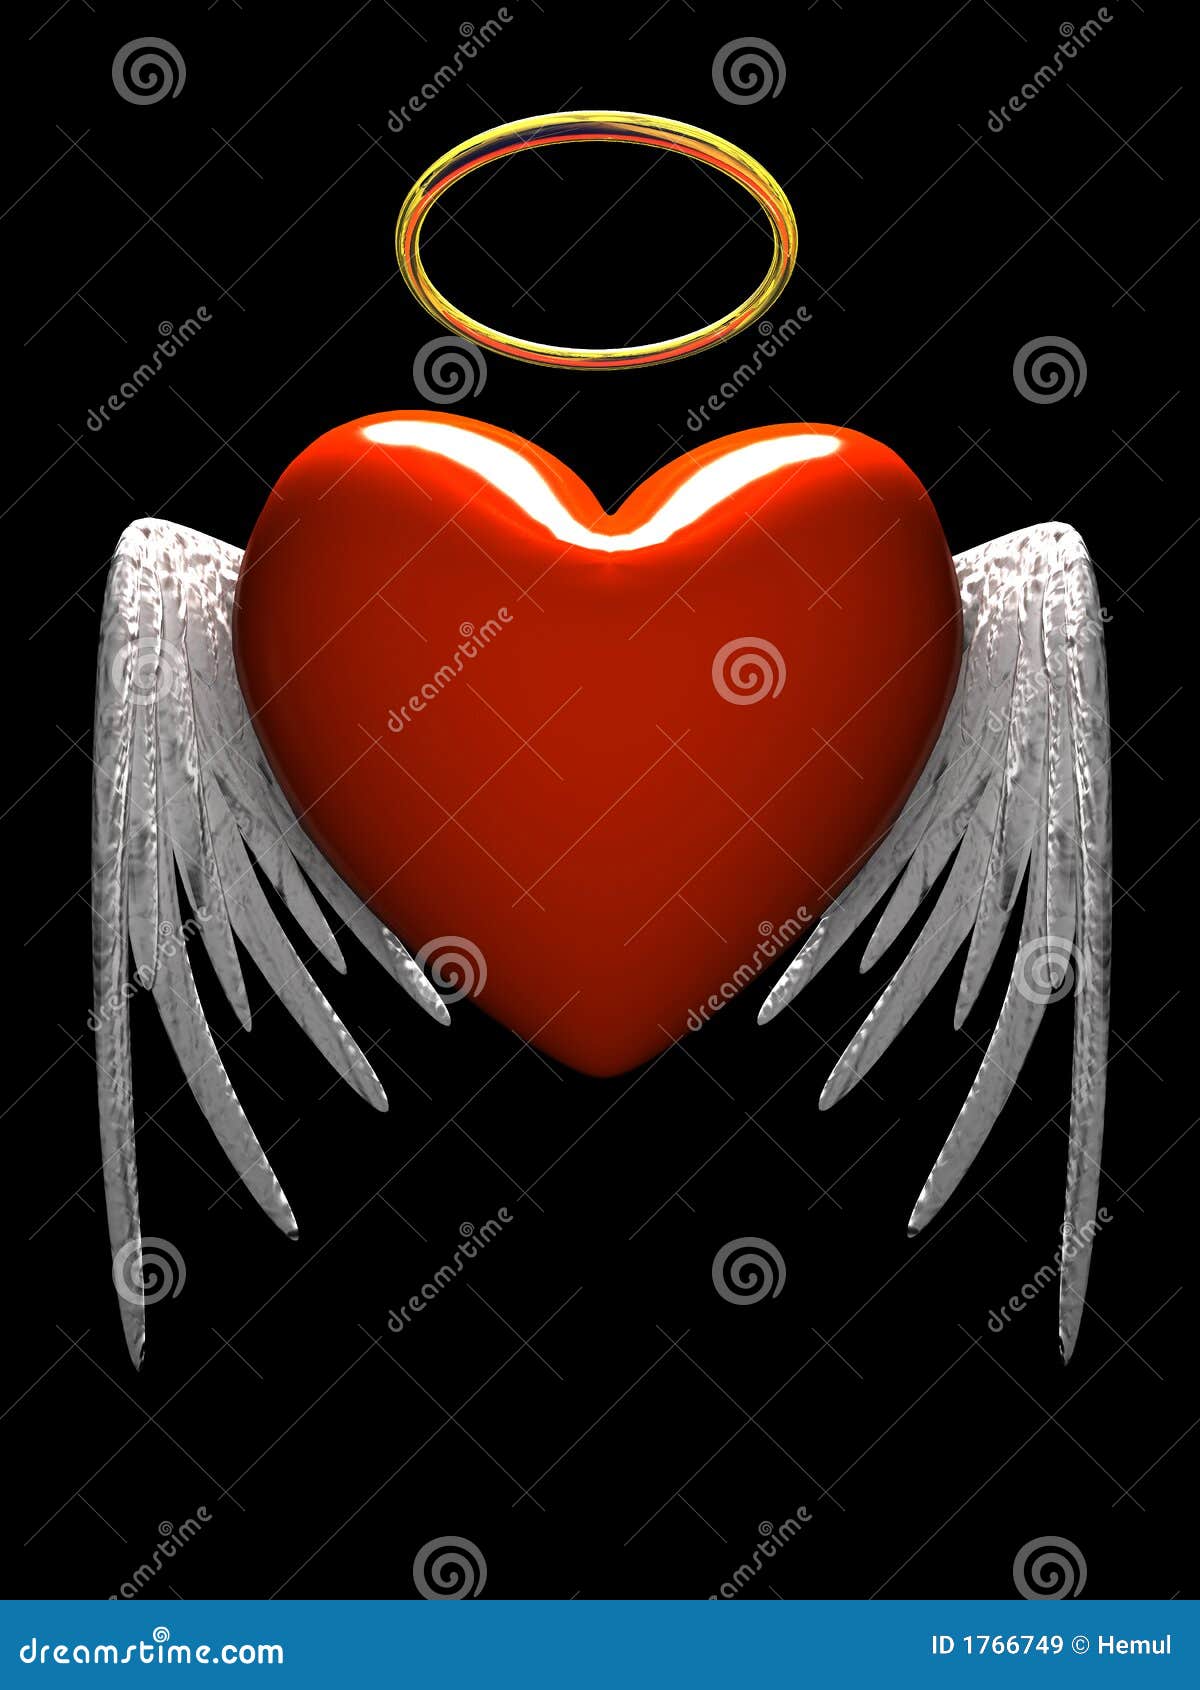 Những hình ảnh của trái tim- thiên thần với đôi cánh sẽ khiến bạn cảm thấy như đang được che chở dưới bàn tay đắc lực của một thiên thần cùng với tình yêu và sự bảo vệ. Hãy xem và cảm nhận cùng với chúng tôi nhé!